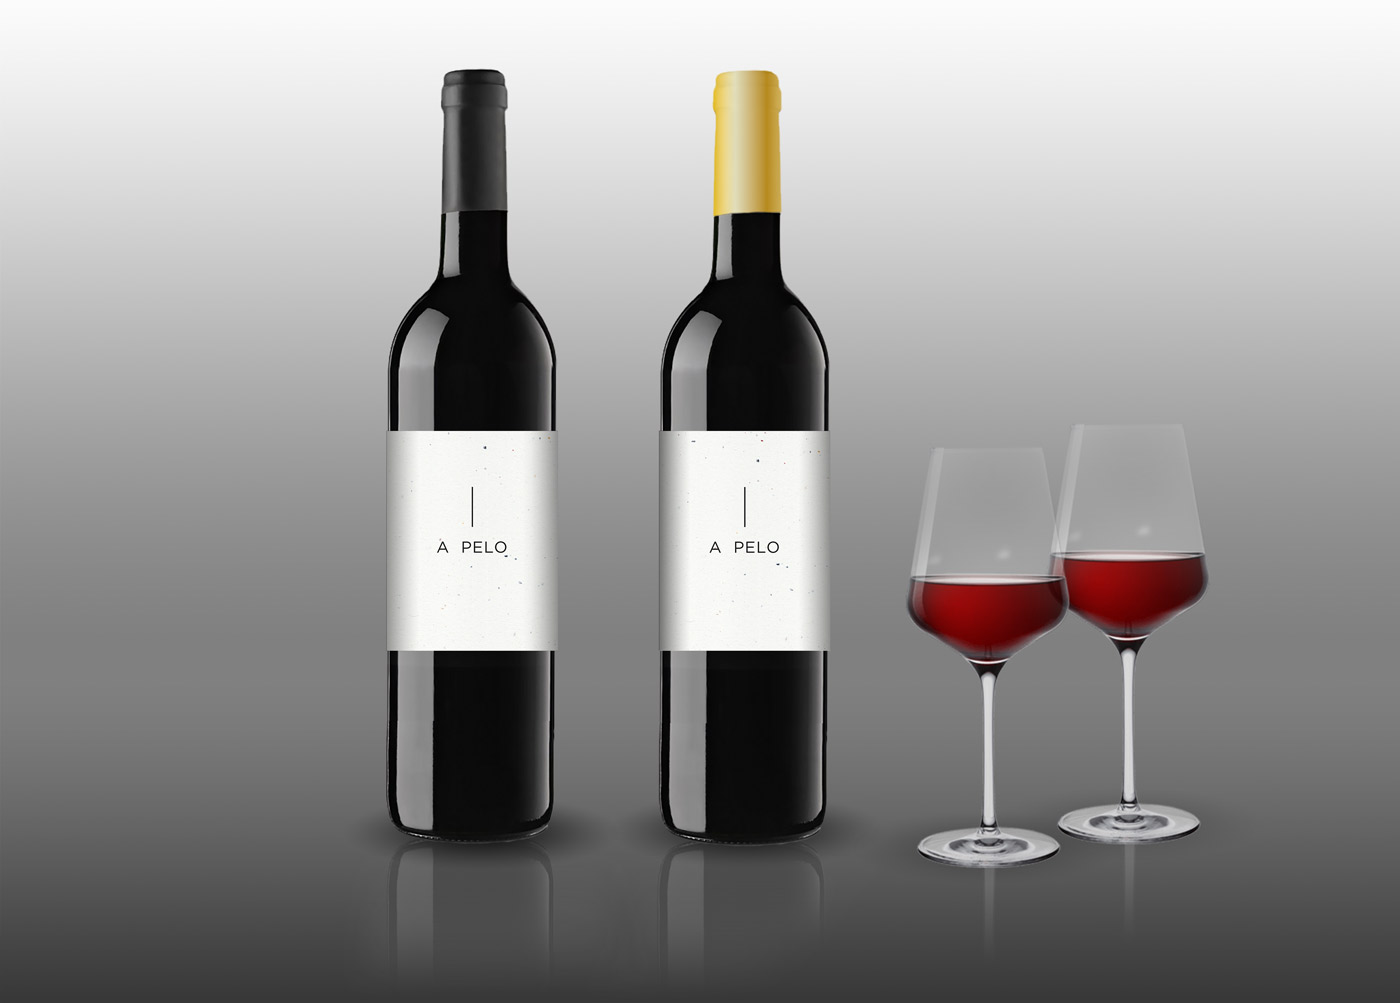 Diseño gráfico y creativo de etiquetas y packaging de vino para irreverente A PELO